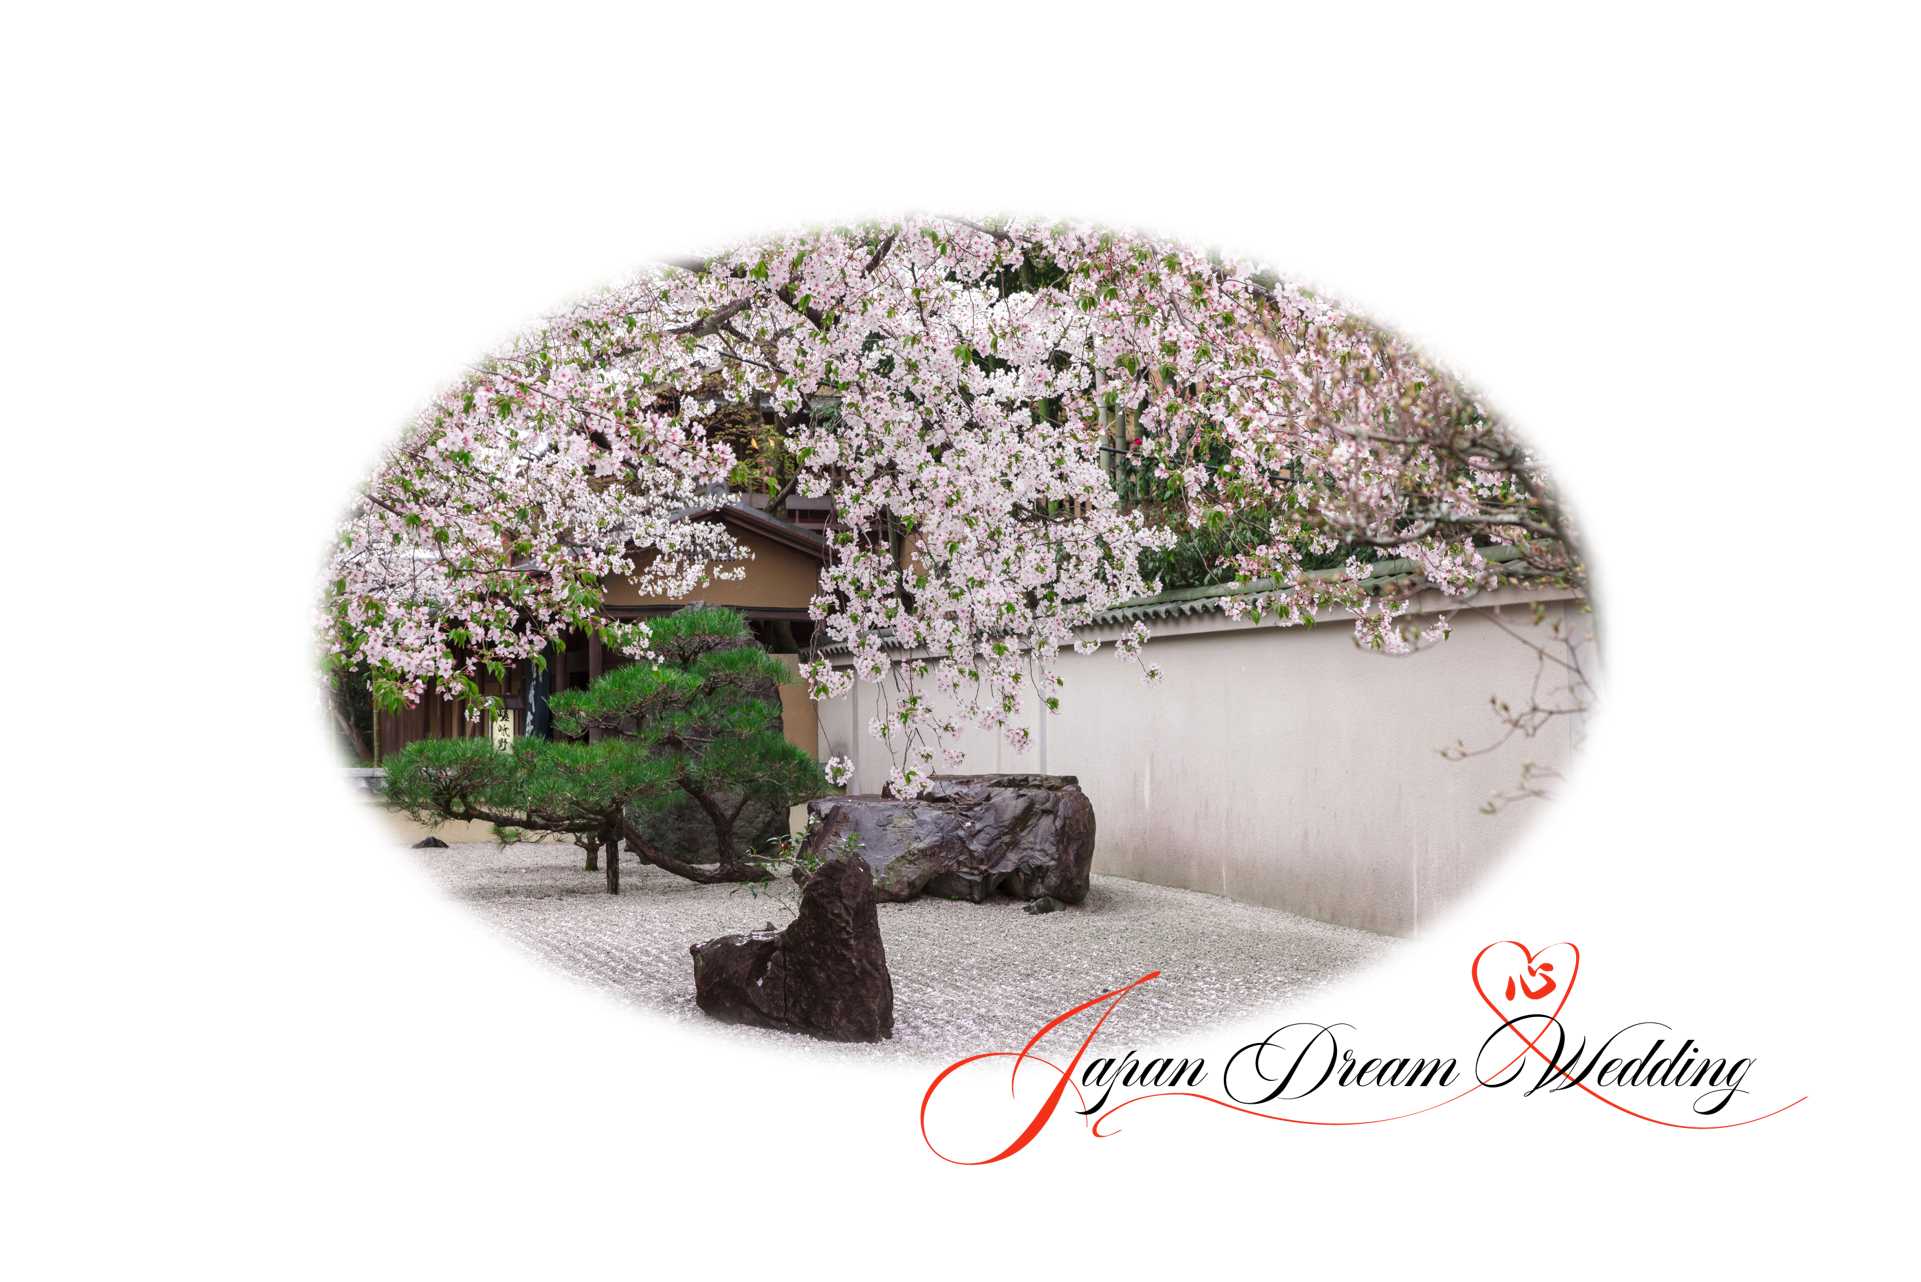 Japan Dream Wedding Spring Garden Contact Us